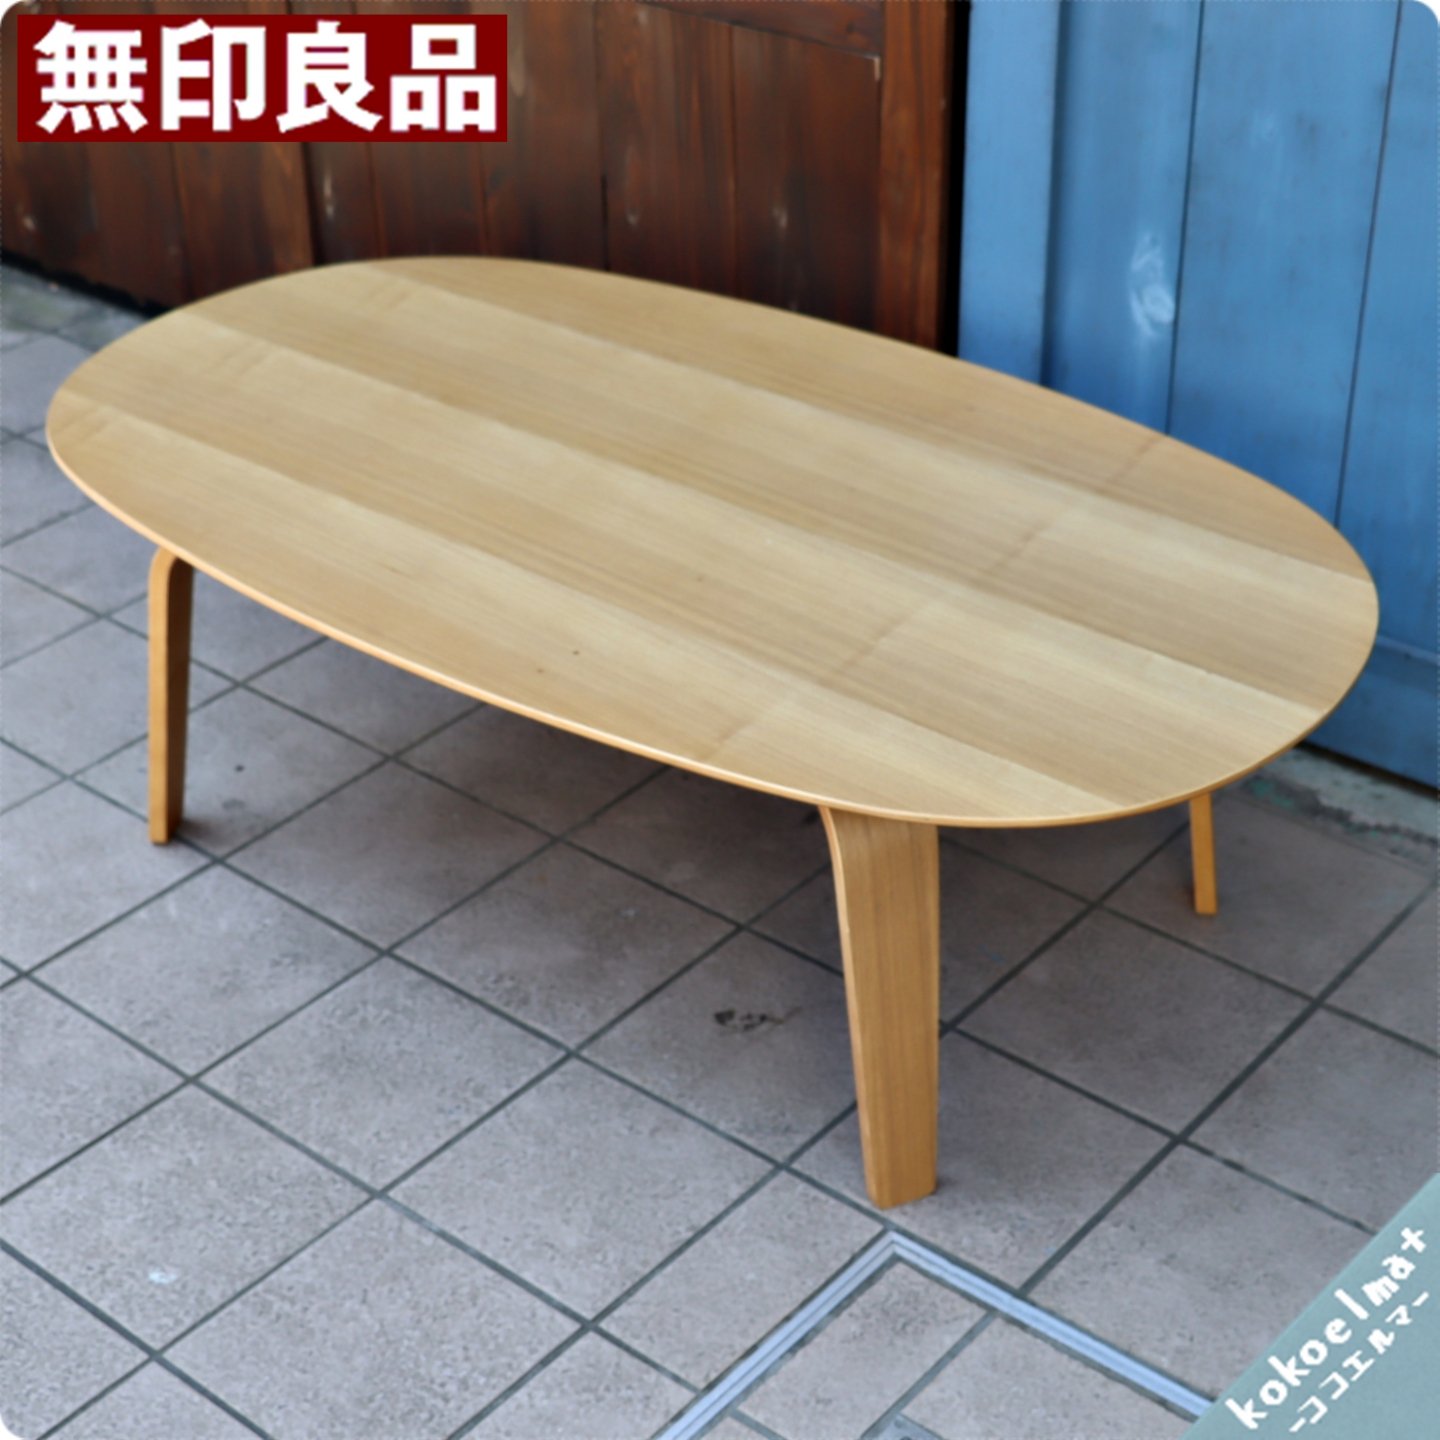 ご注意ください 無印良品 楕円形テーブル リビングテーブル ロー 